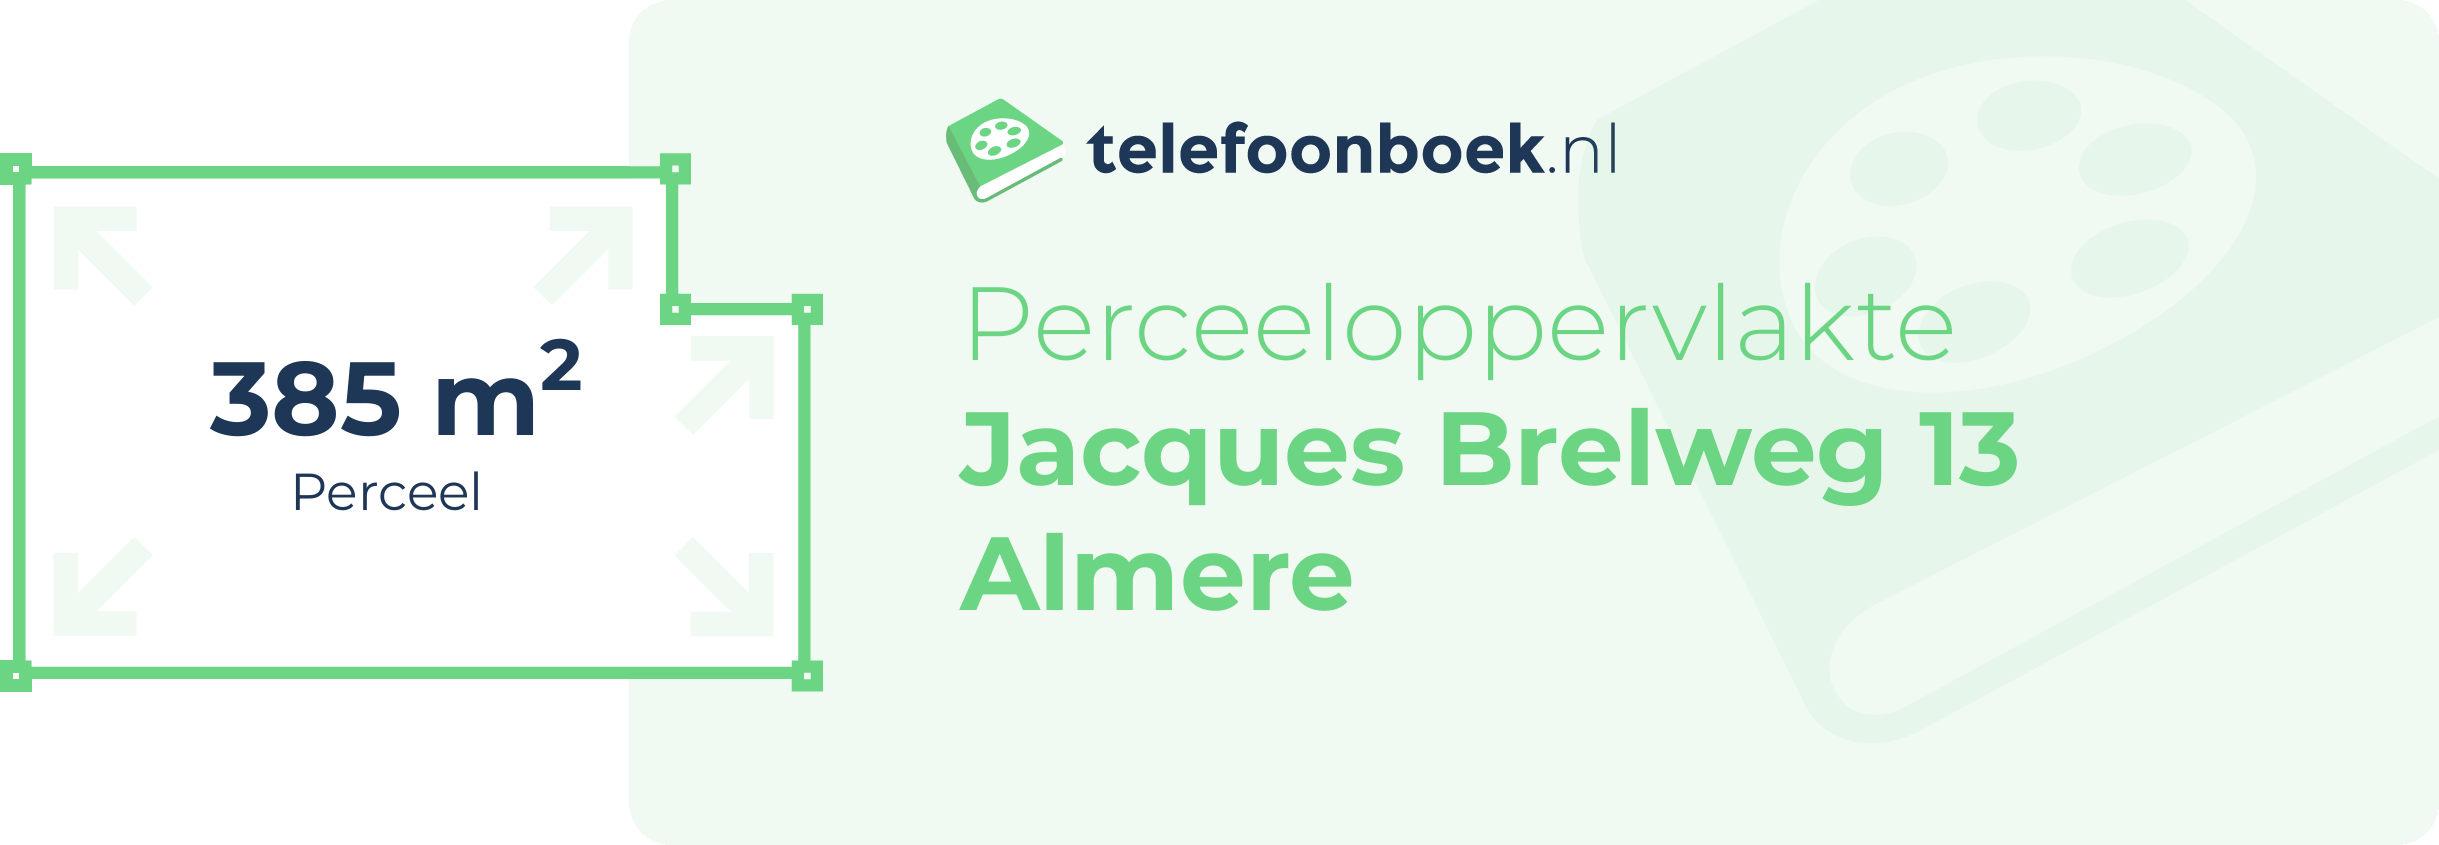 Perceeloppervlakte Jacques Brelweg 13 Almere